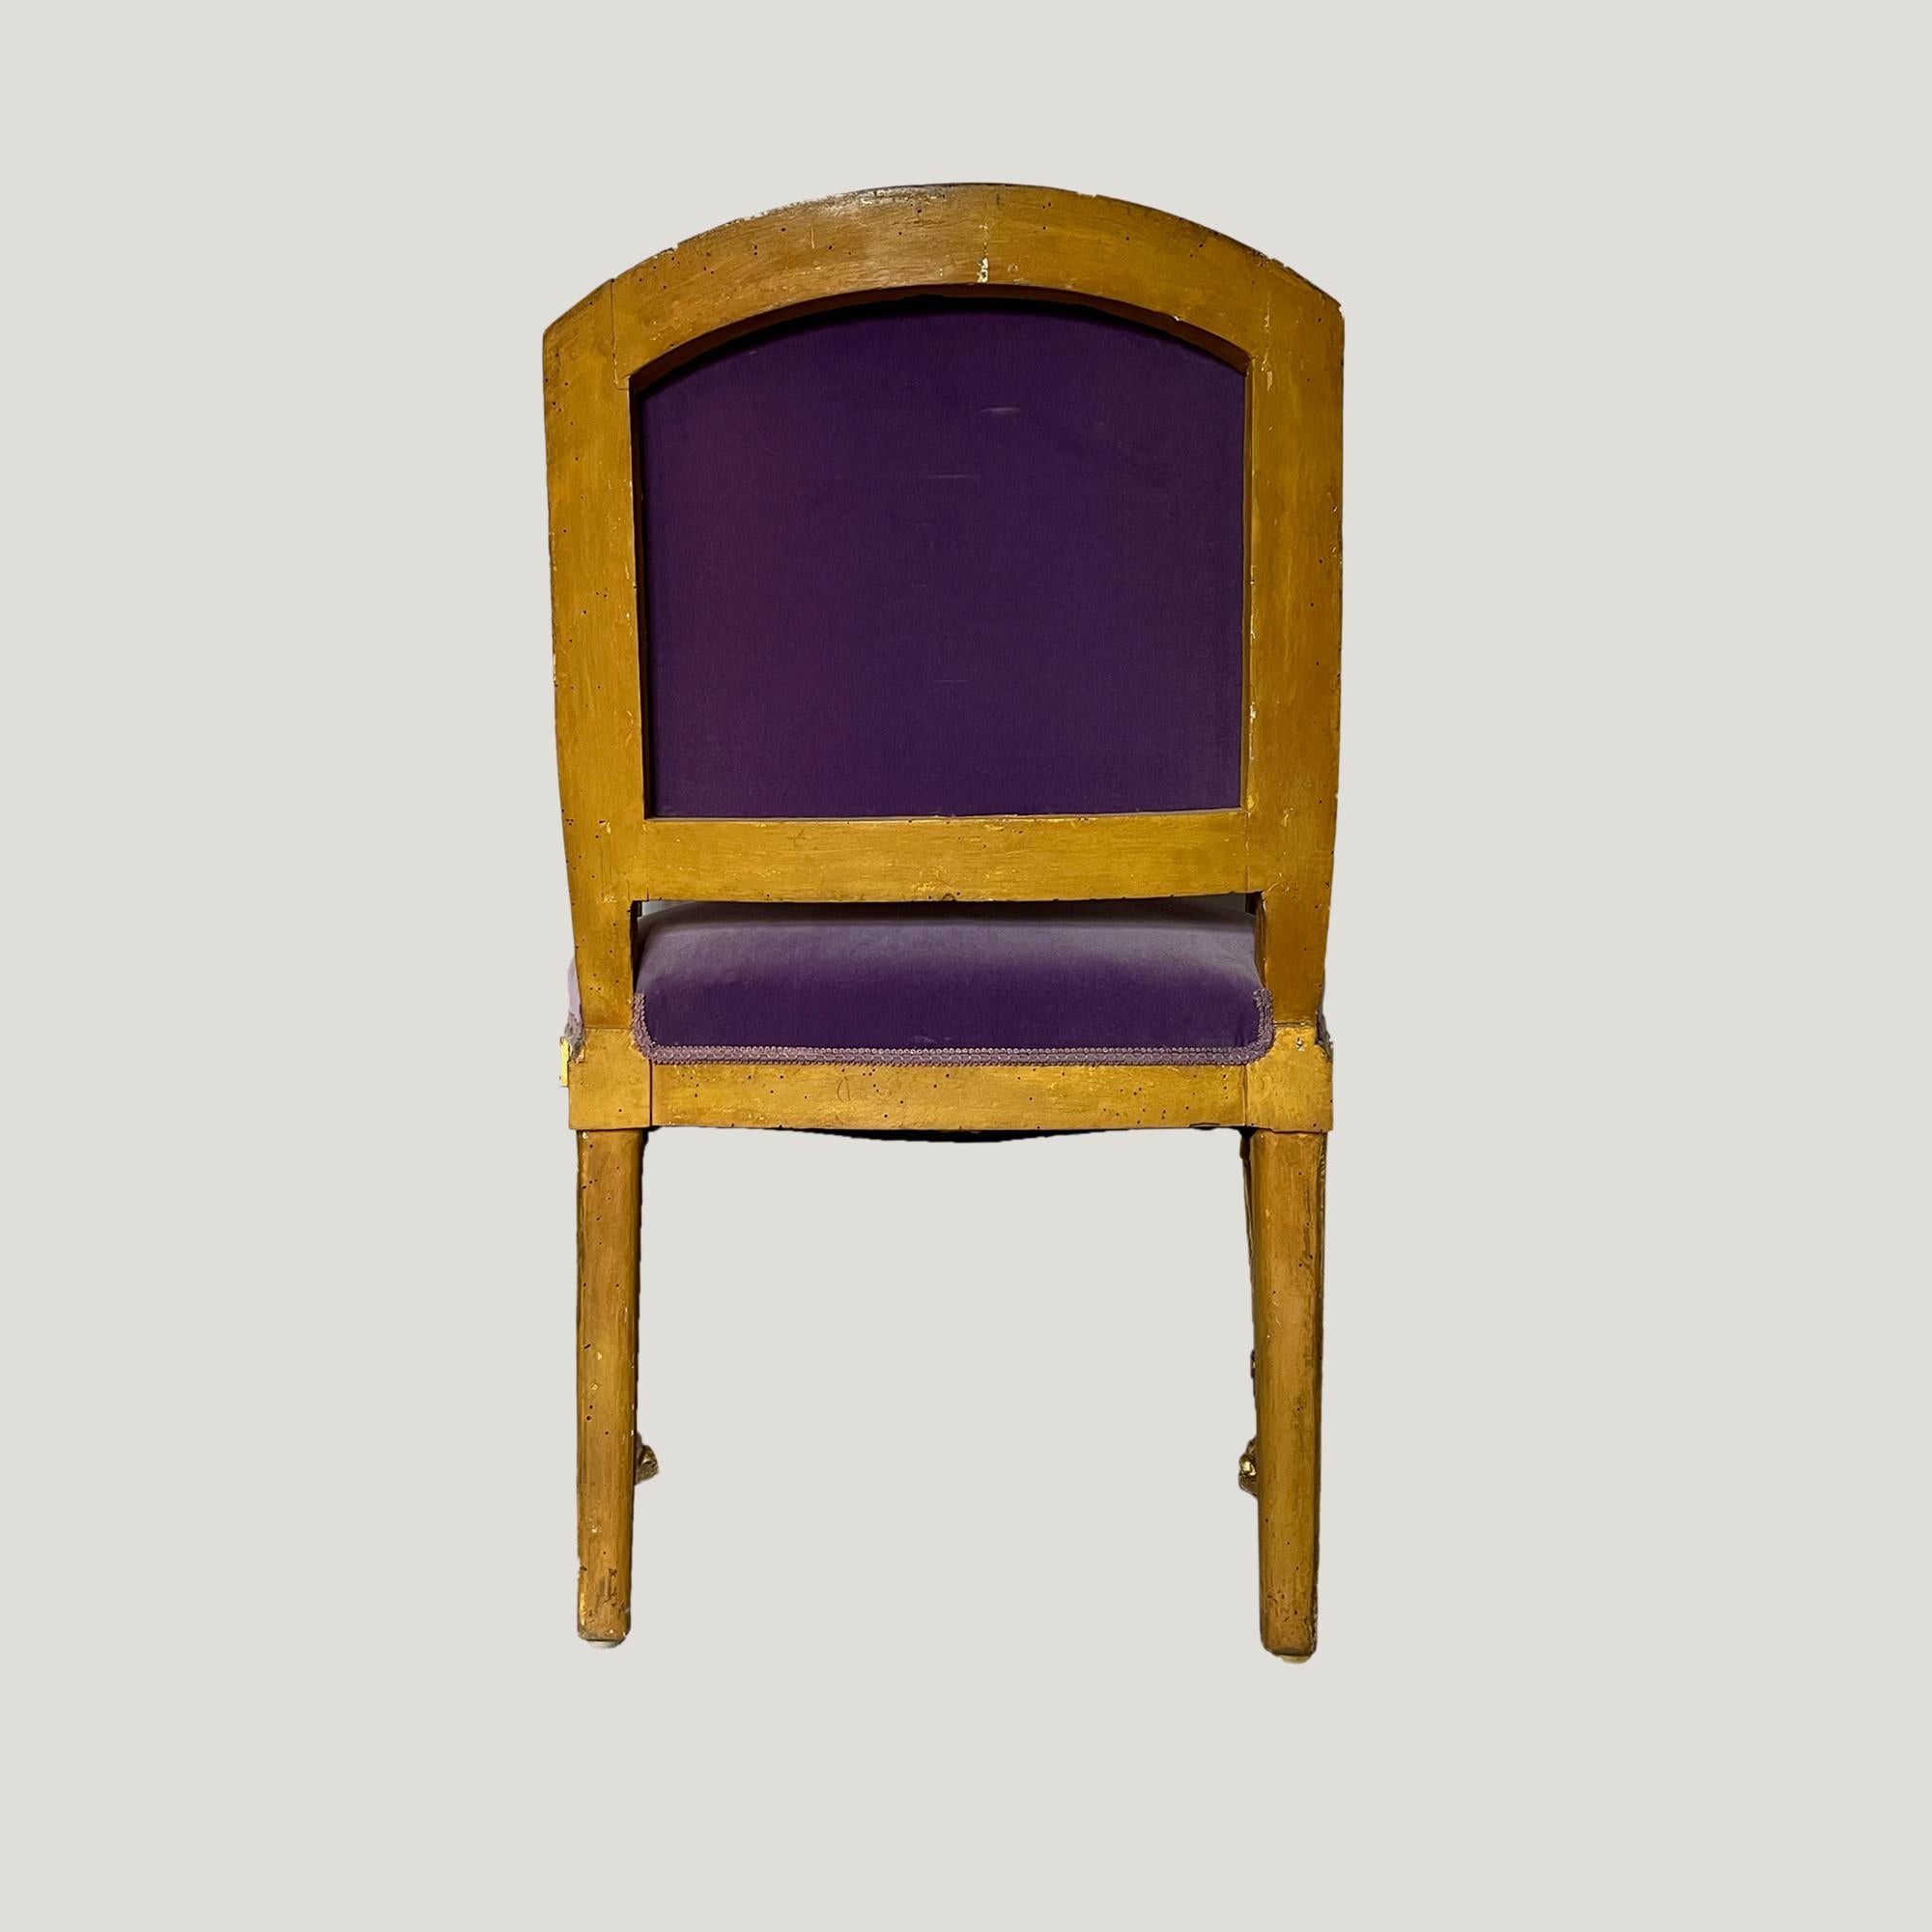 Paire de fauteuils d'apparat en bois sculpté et doré.
Pieds cannelés se terminant par des pattes de lion, traverses richement sculptées.
Fin du XVIIIe siècle.

Cette magnifique paire de fauteuils aux proportions parfaites pour des fauteuils